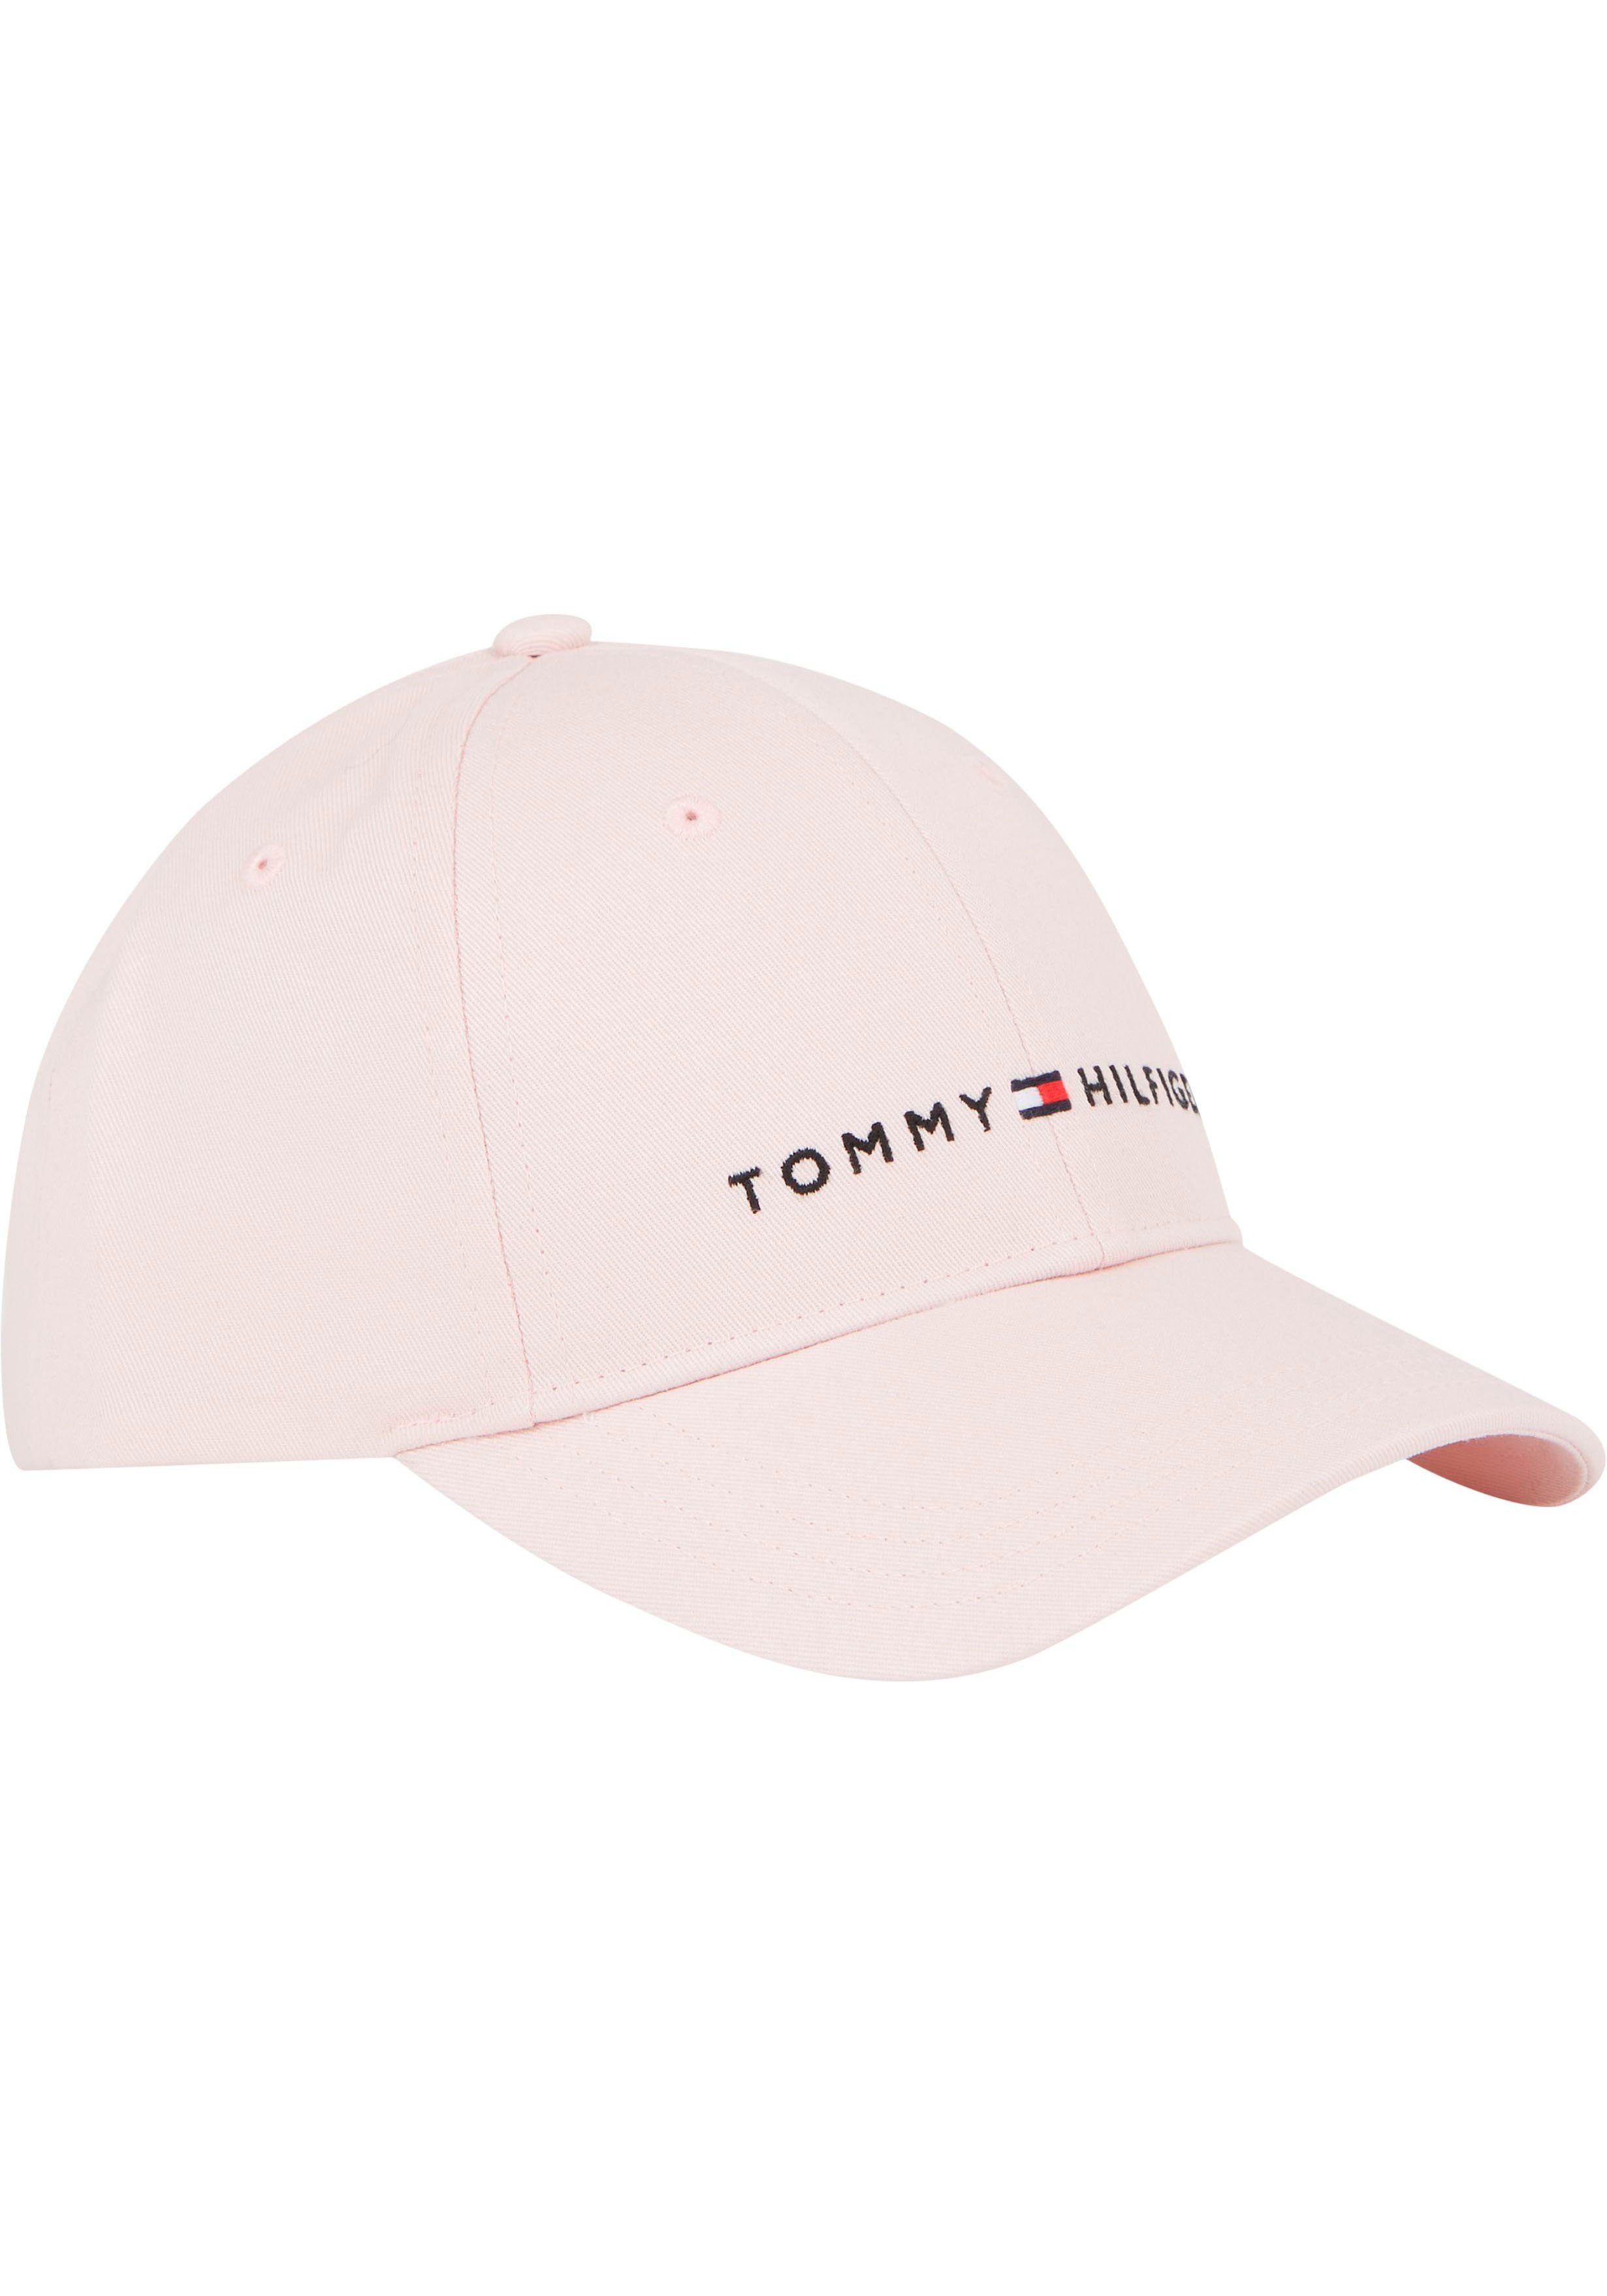 Tommy Hilfiger Kinder Cap Kids Logostickerei CAP Fitted TH Junior ESSENTIAL MiniMe,mit